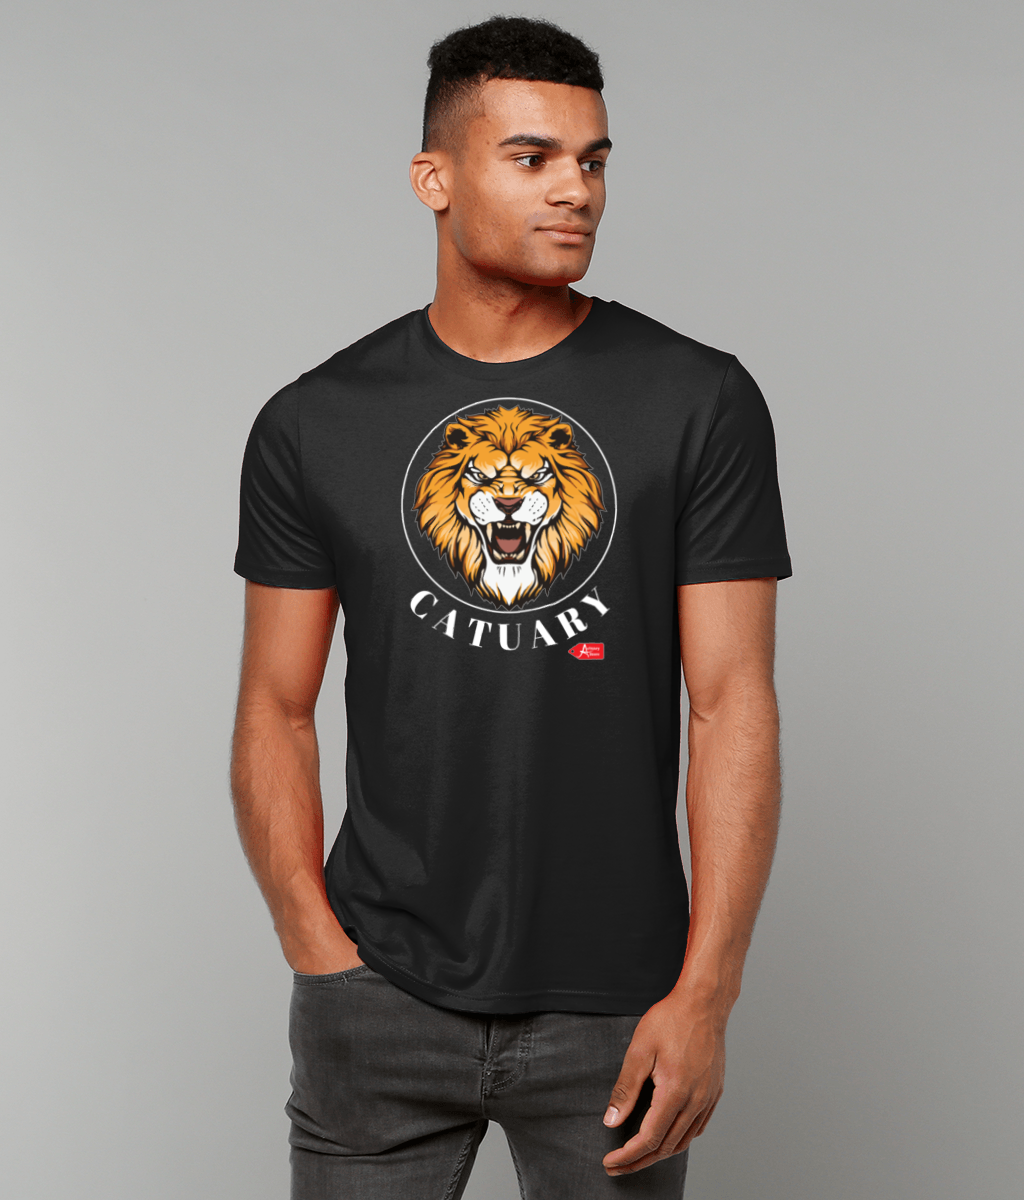 Catuary Lion T-Shirt